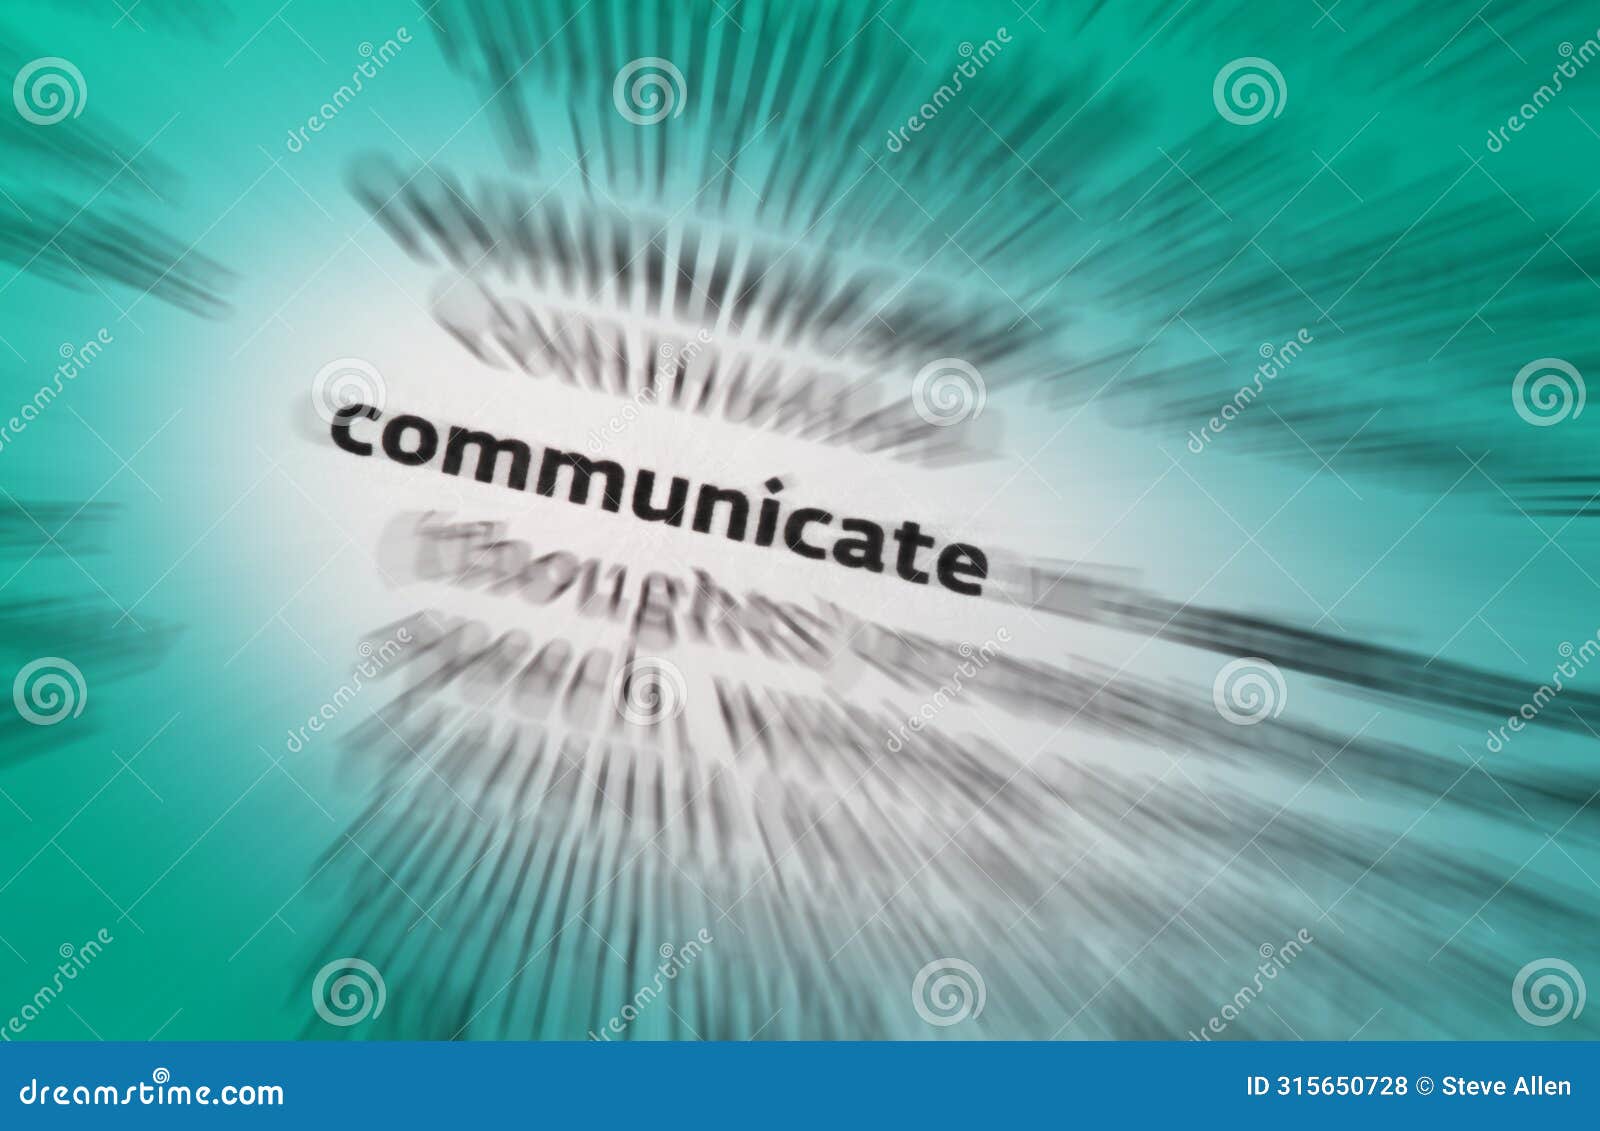 communicate - communications